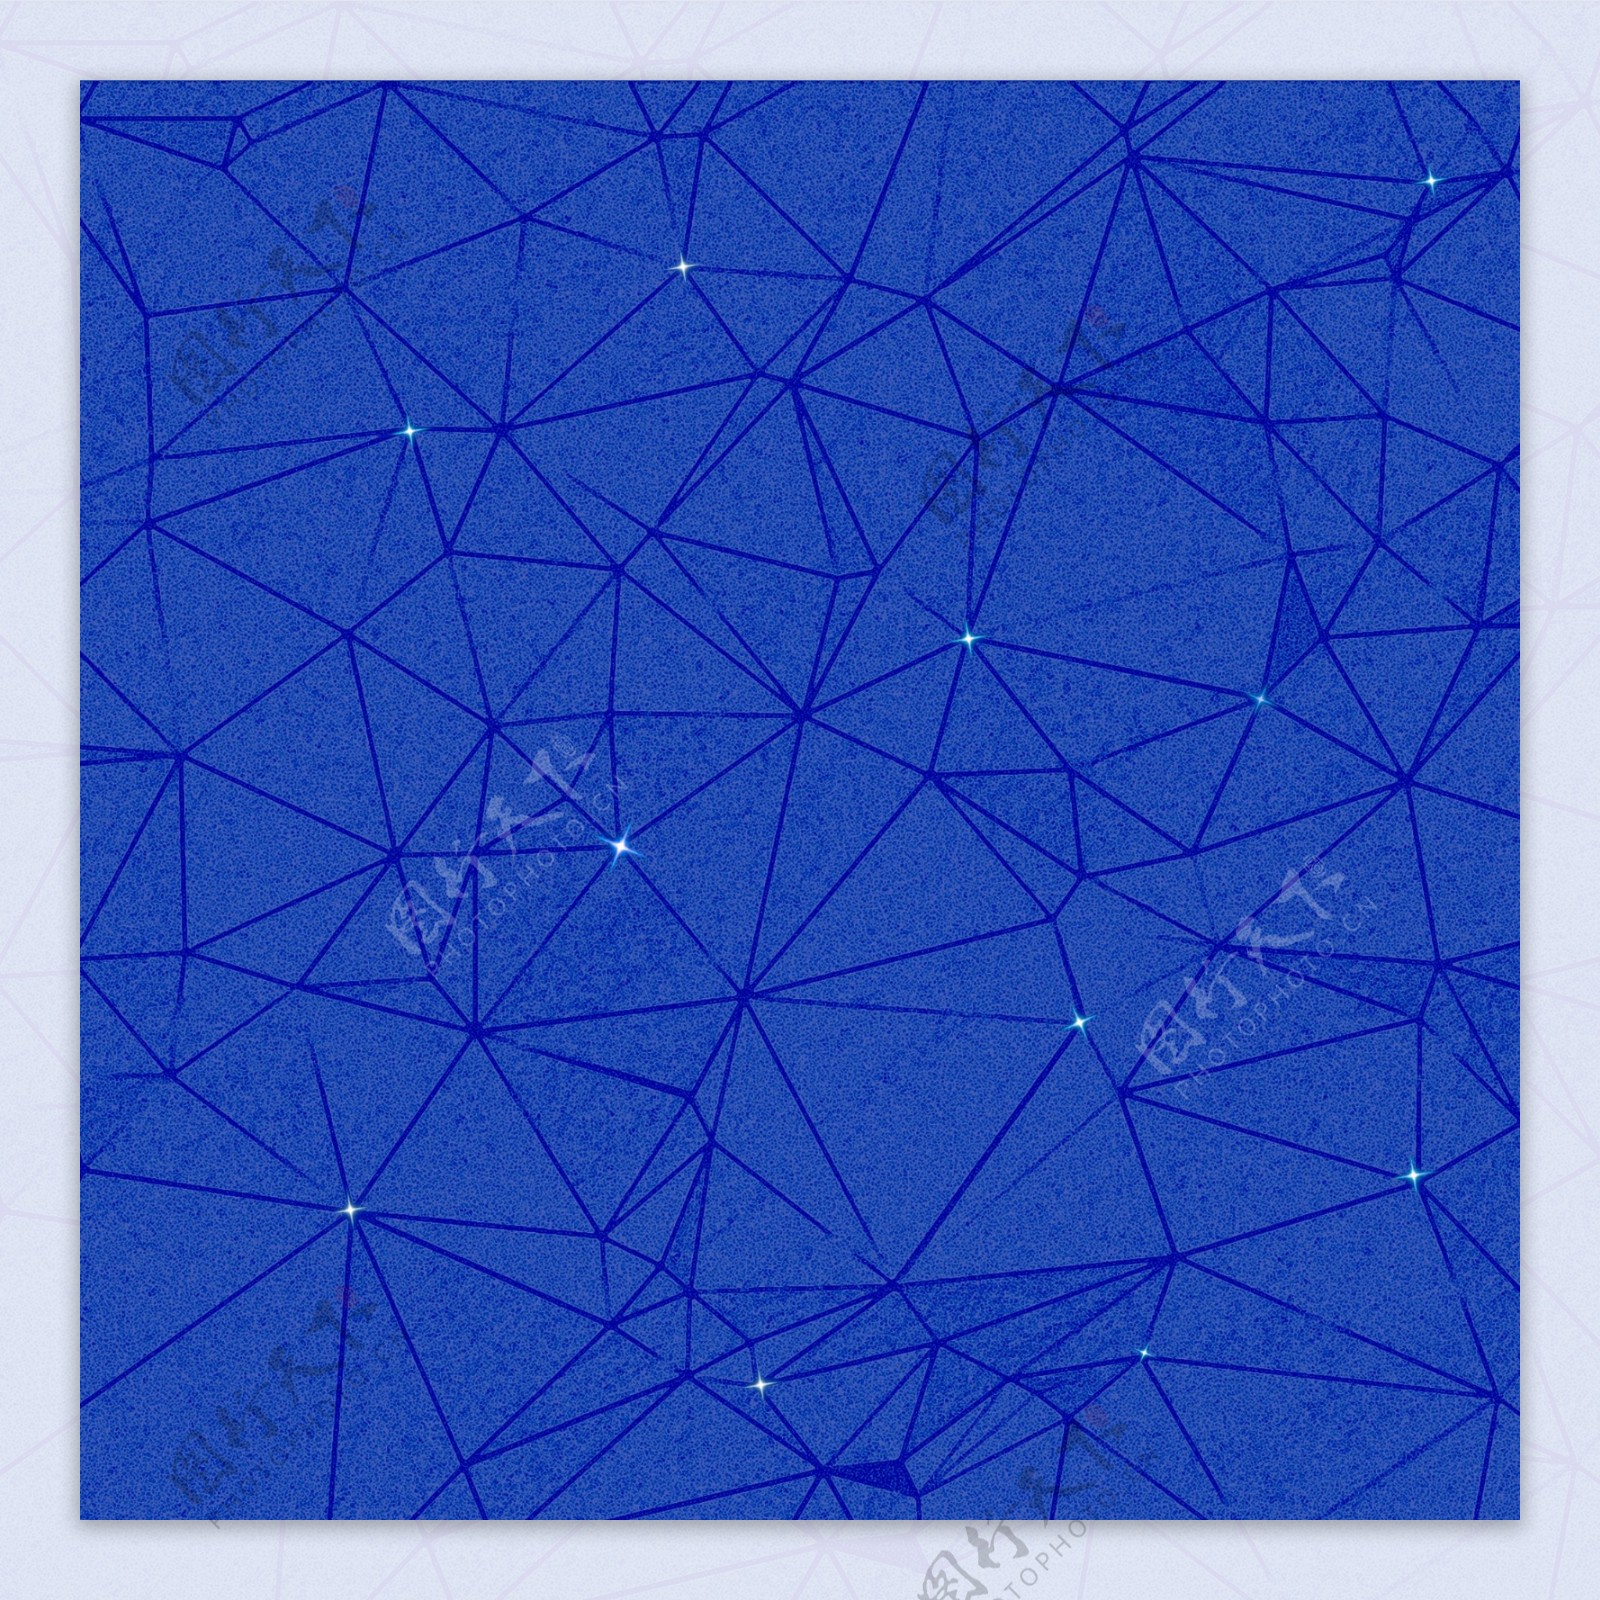 科技蓝色几何纹理星光背景